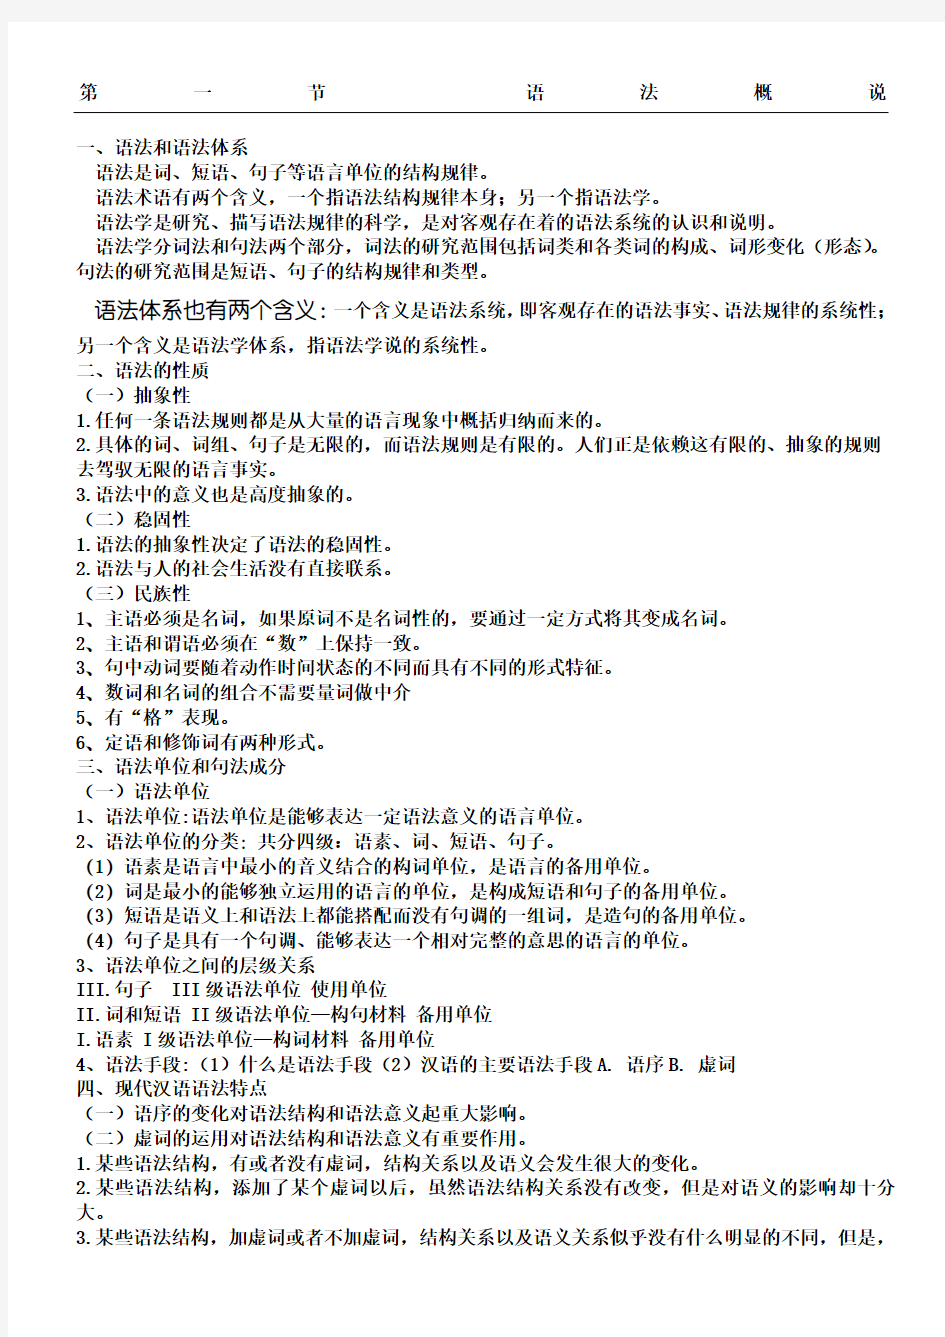 现代汉语下册复习资料 (1)